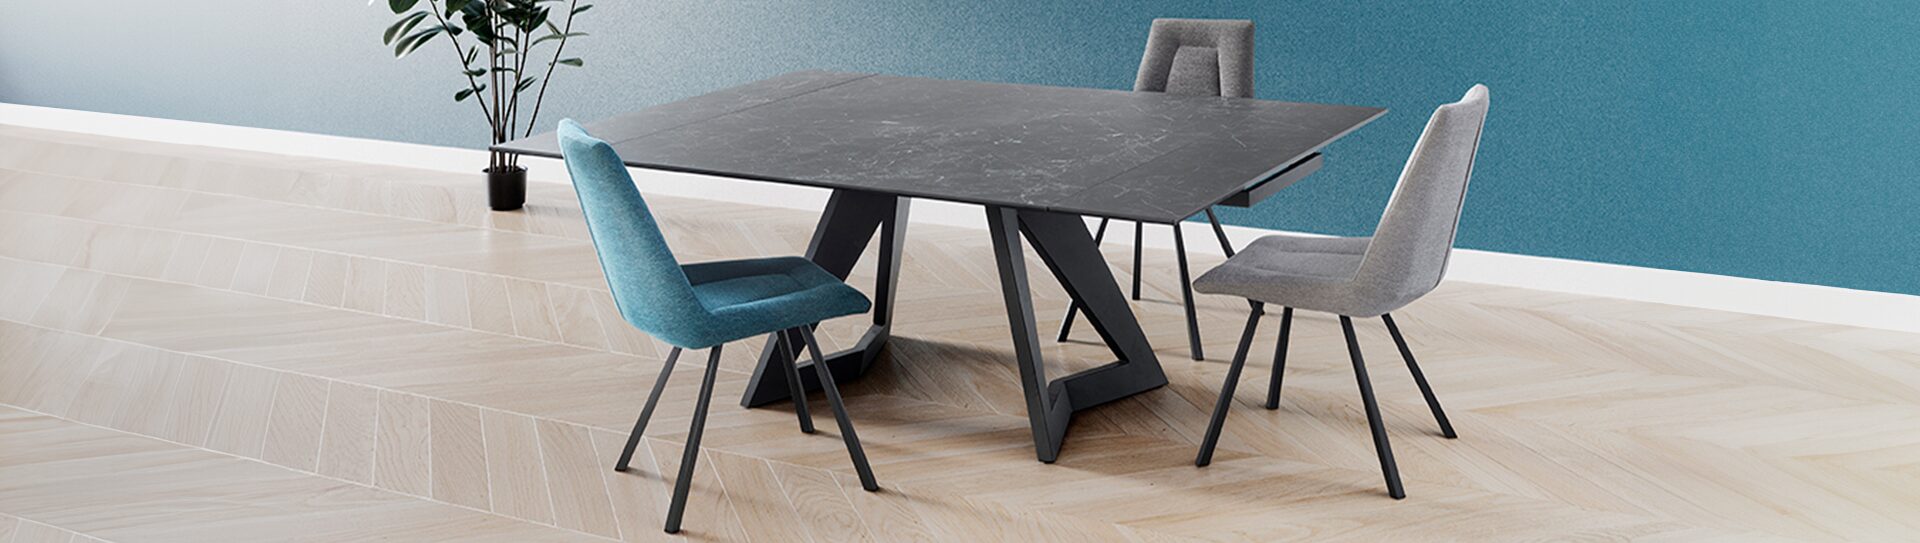 Table à manger NESTOR Table à manger Nestor carrée noire dépliée avec pieds robustes et design l Géant du meuble